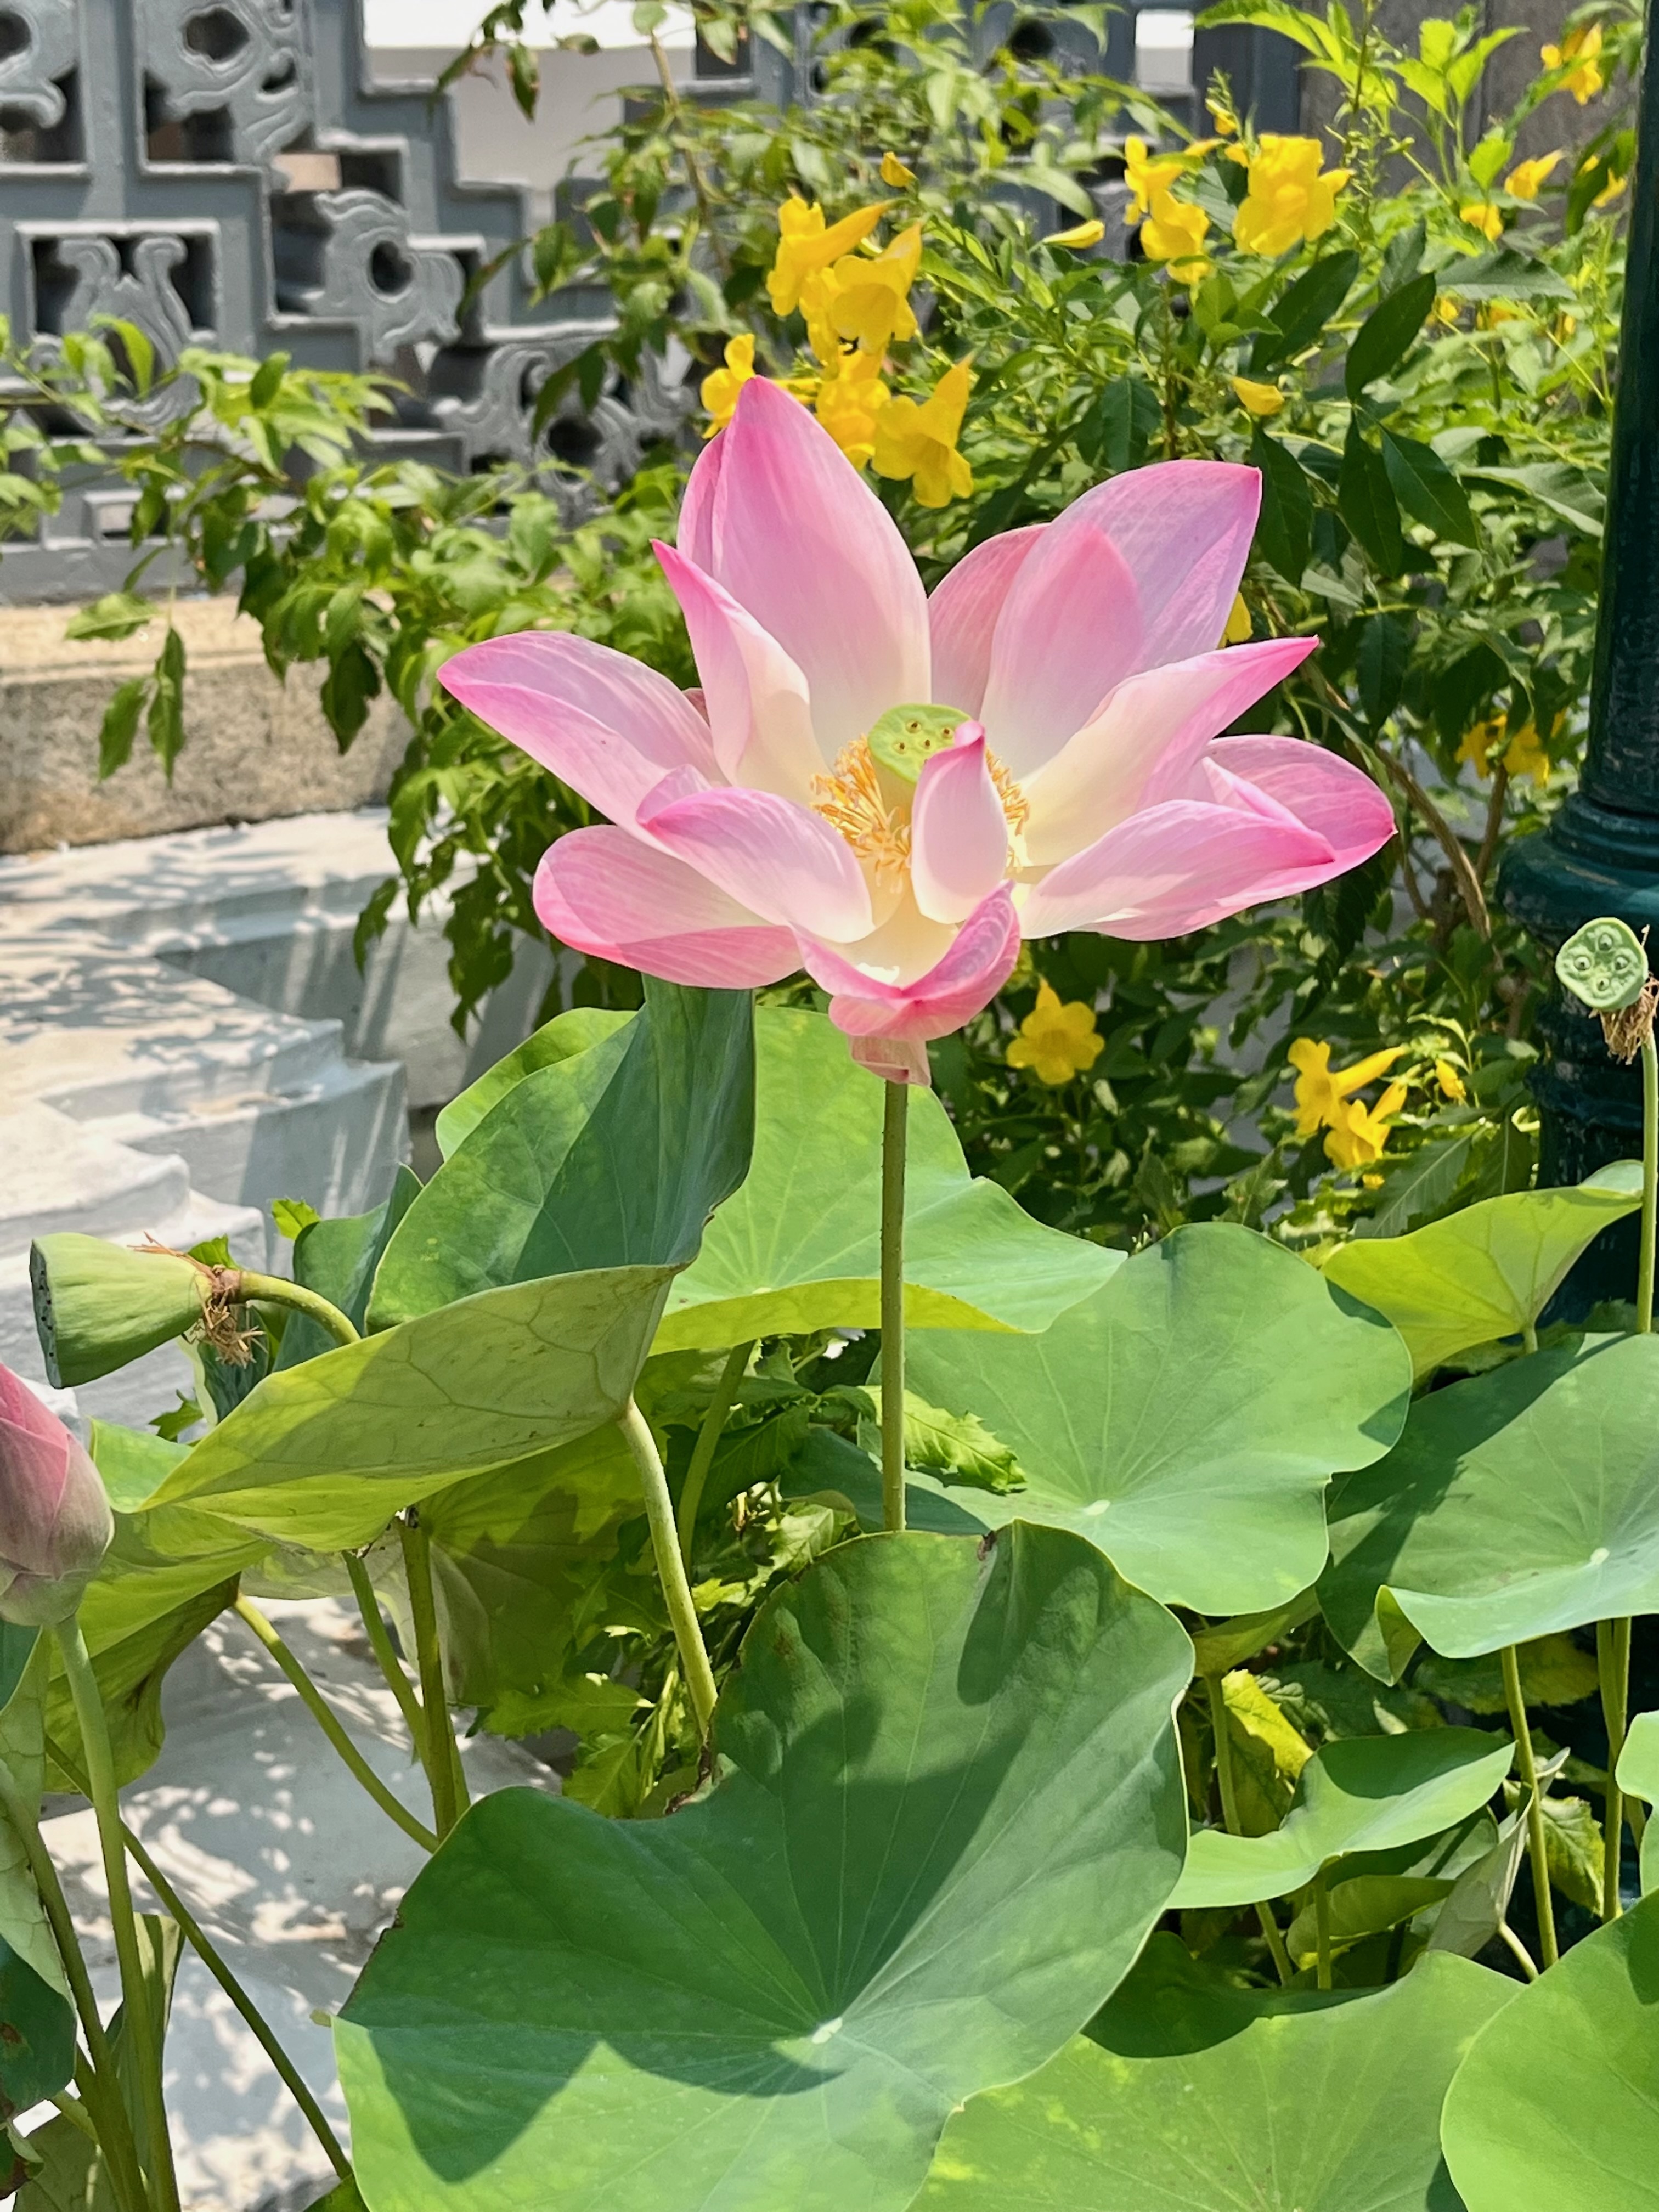 lotus flower grand palace Bangkok